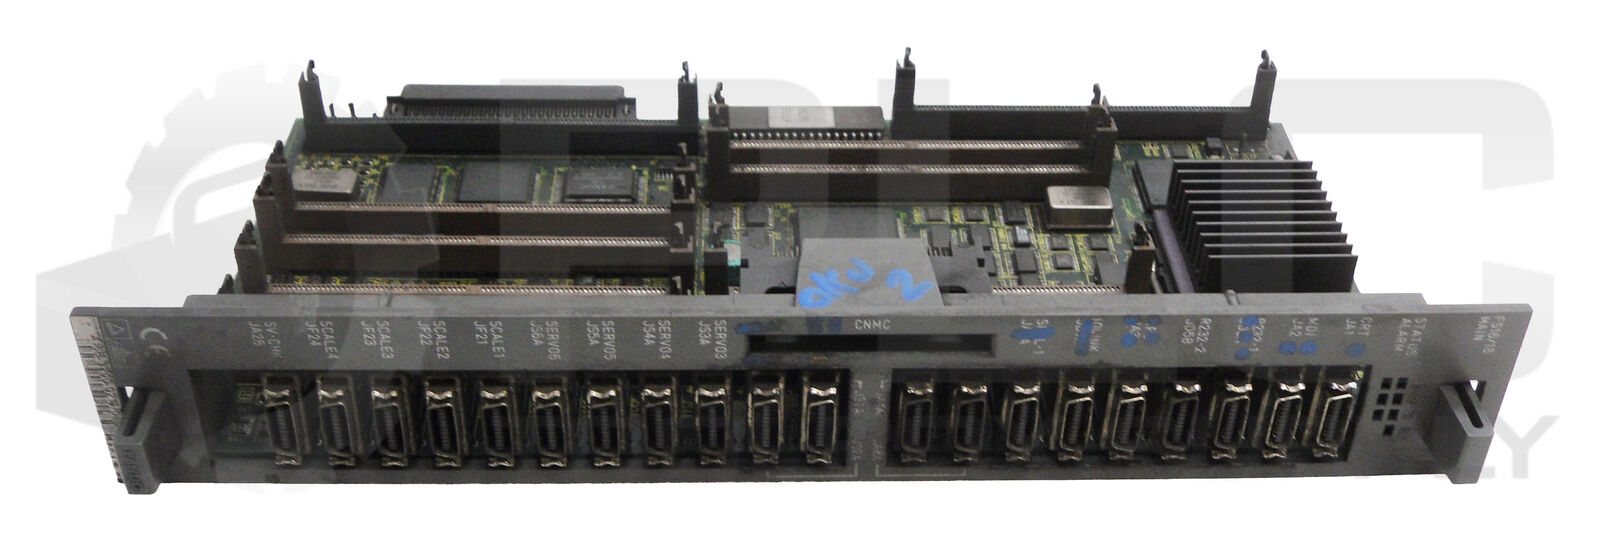 FANUC A16B-3200-0210/05C CPU BOARD A16B-3200-0210/05C103019